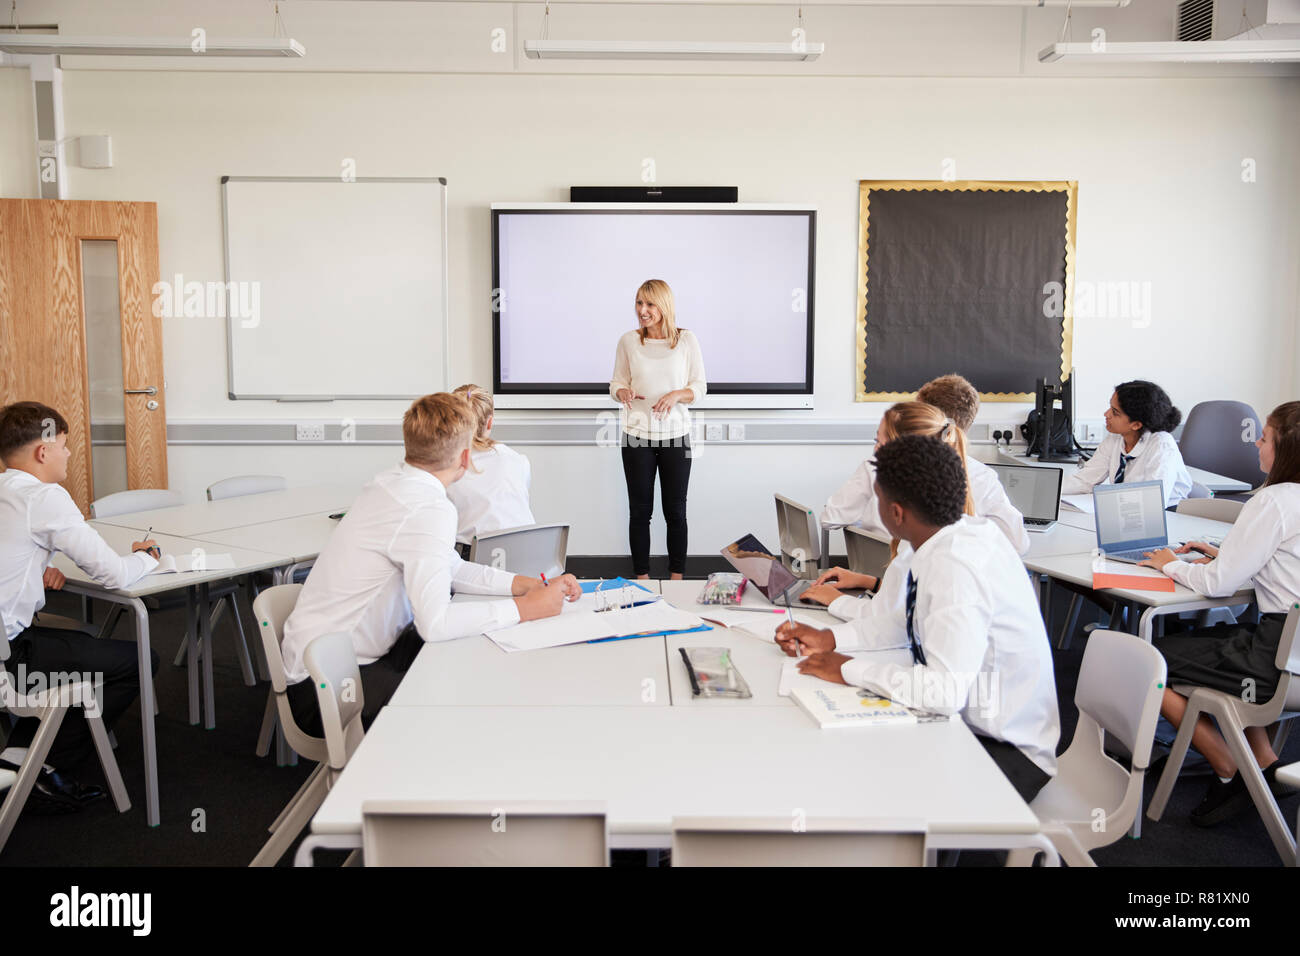 Female High School Lehrer Neben interaktiven Whiteboard und Lehre Lehre Schüler Uniform tragen Stockfoto